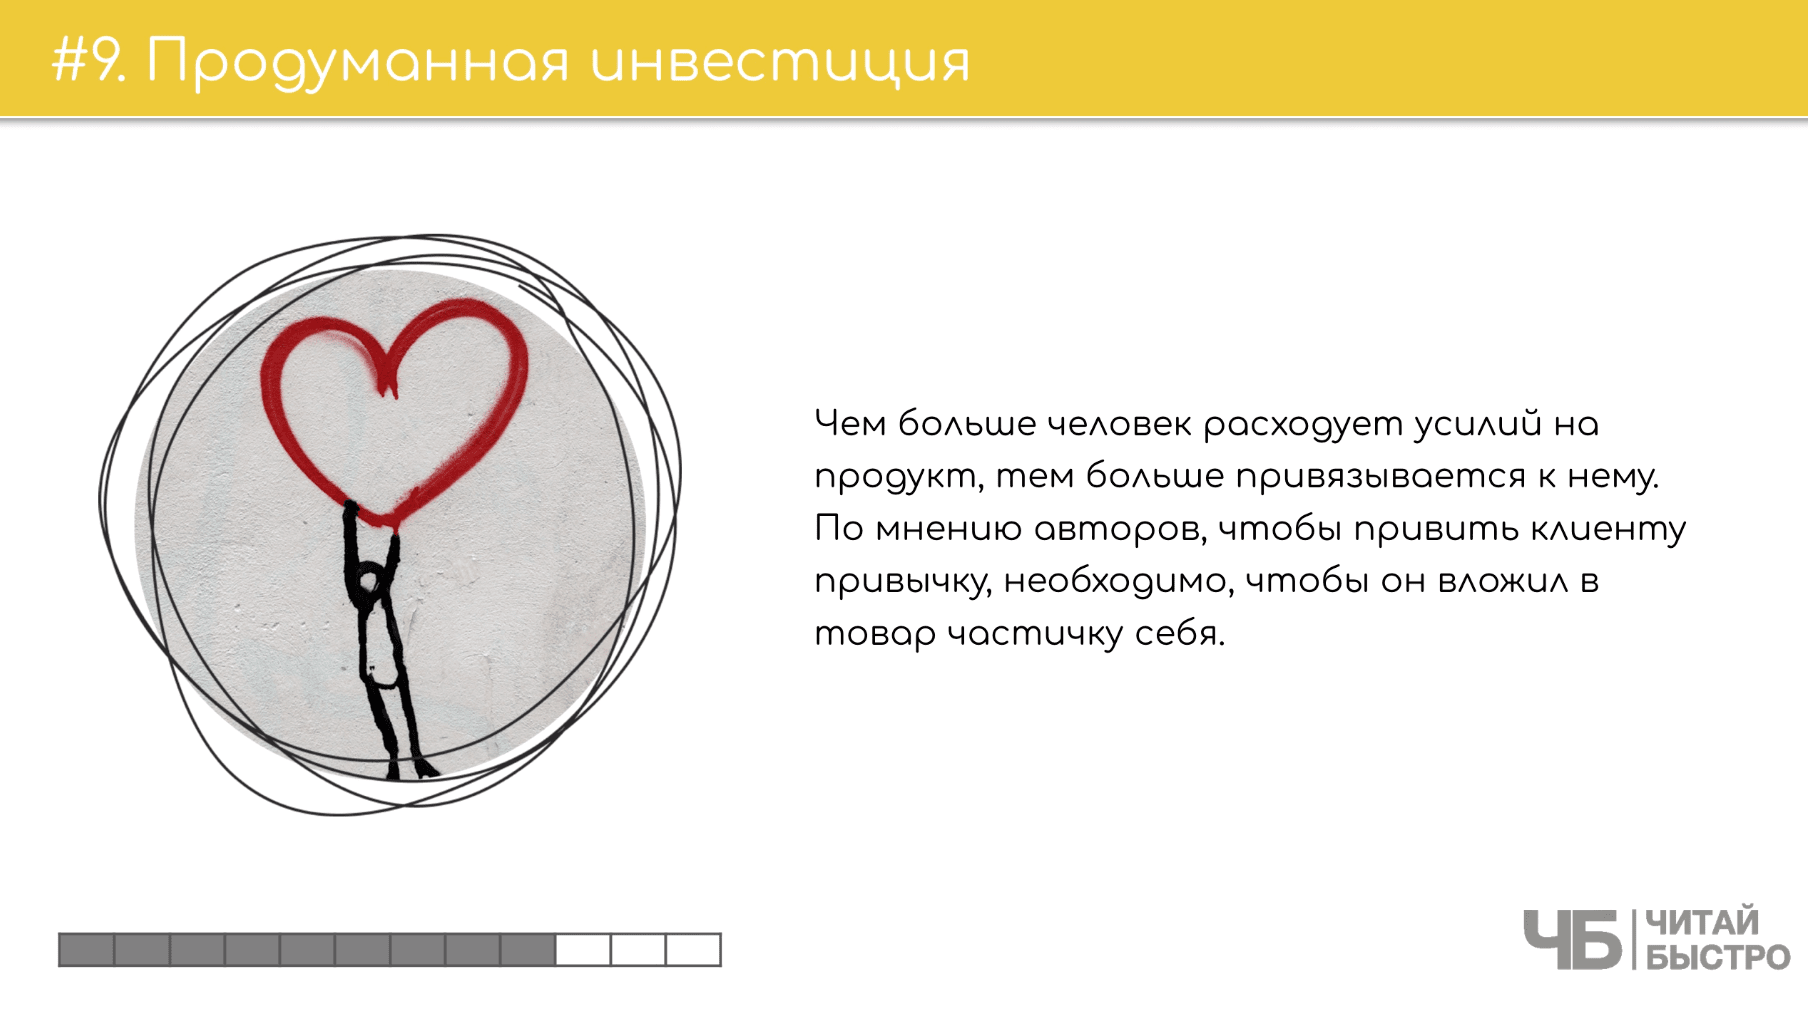 На этом слайде изображен тезис о продуманной инвестиции и иллюстрация фигурки человечка с сердечком.